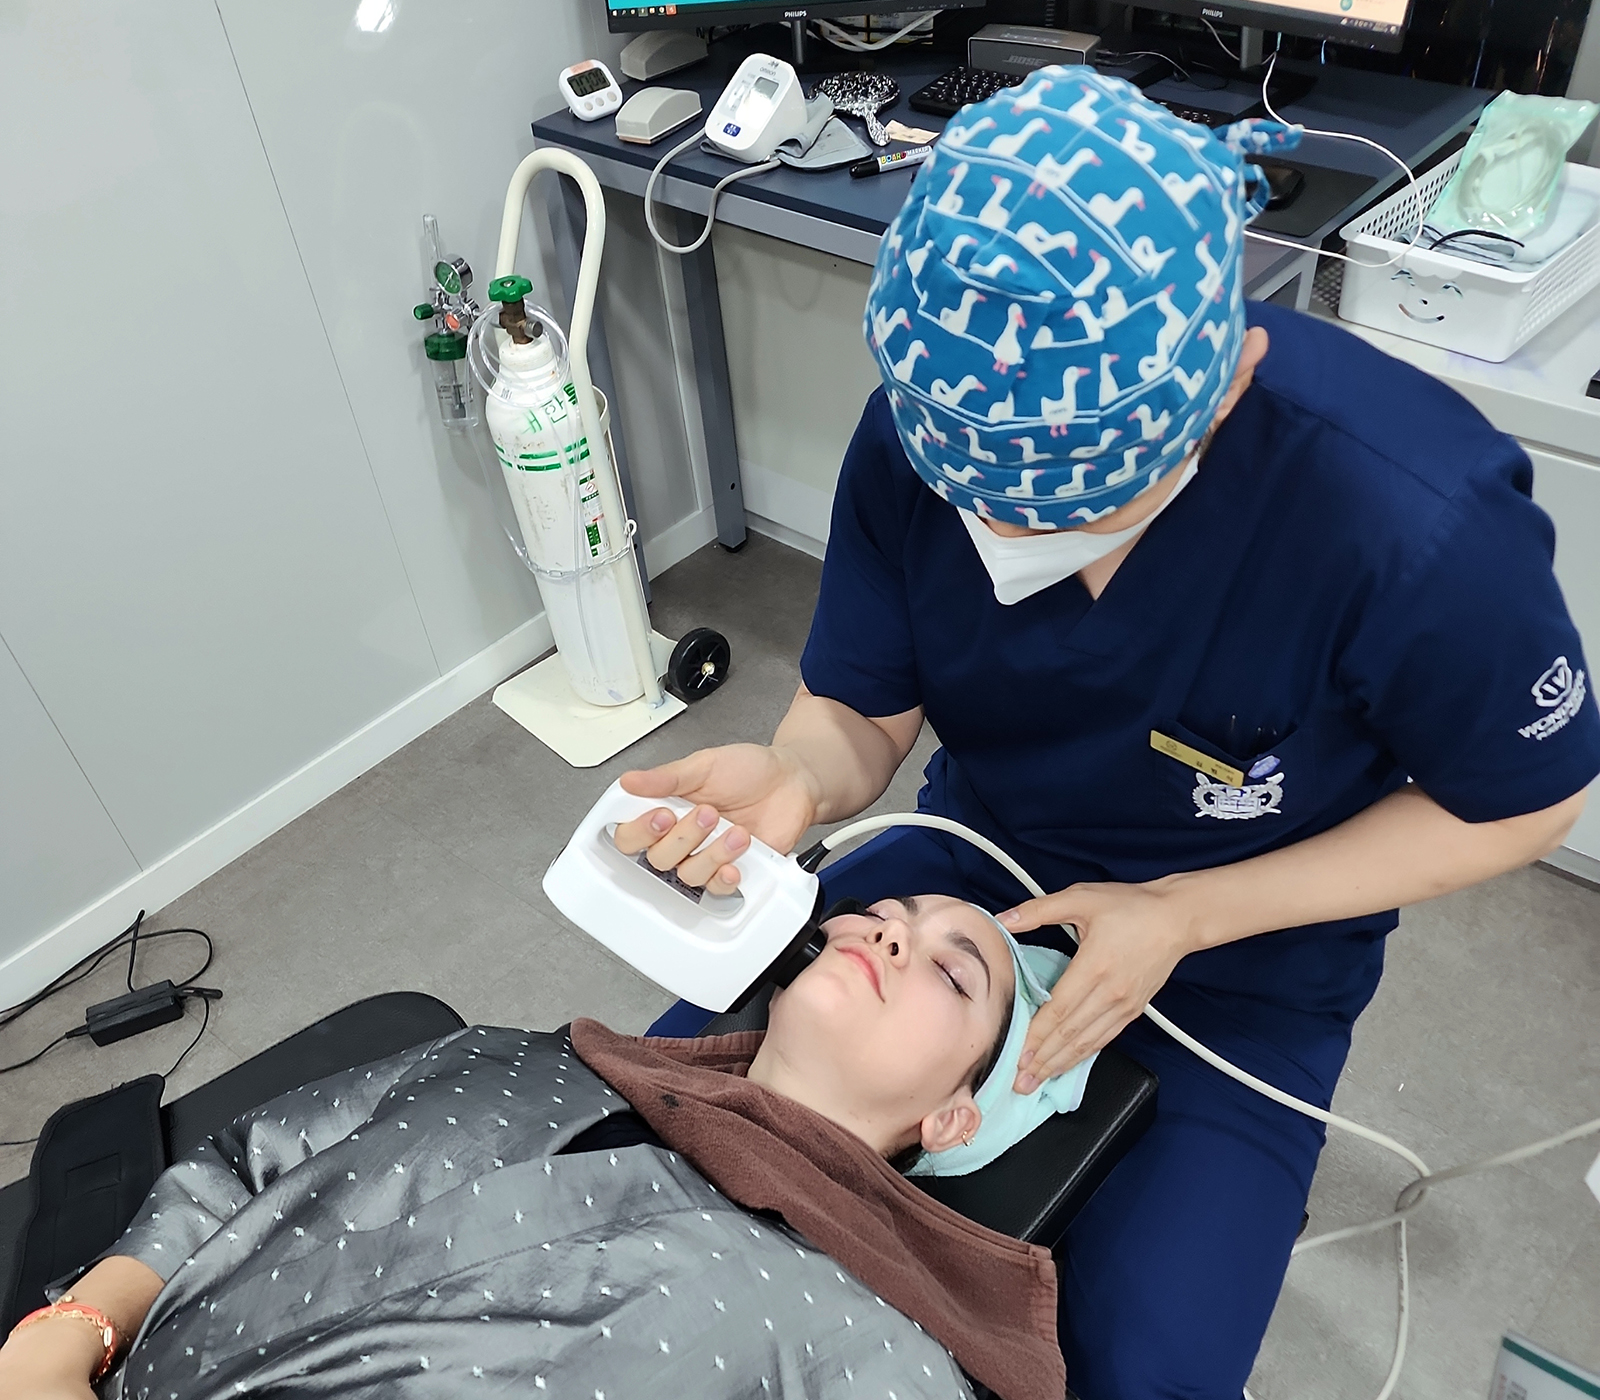 مدونة الجراحة التجميلية الرائعة: أفضل 8 علاجات غير جراحية رائجة في كوريا الجنوبية وحقن إذابة الدهون 2